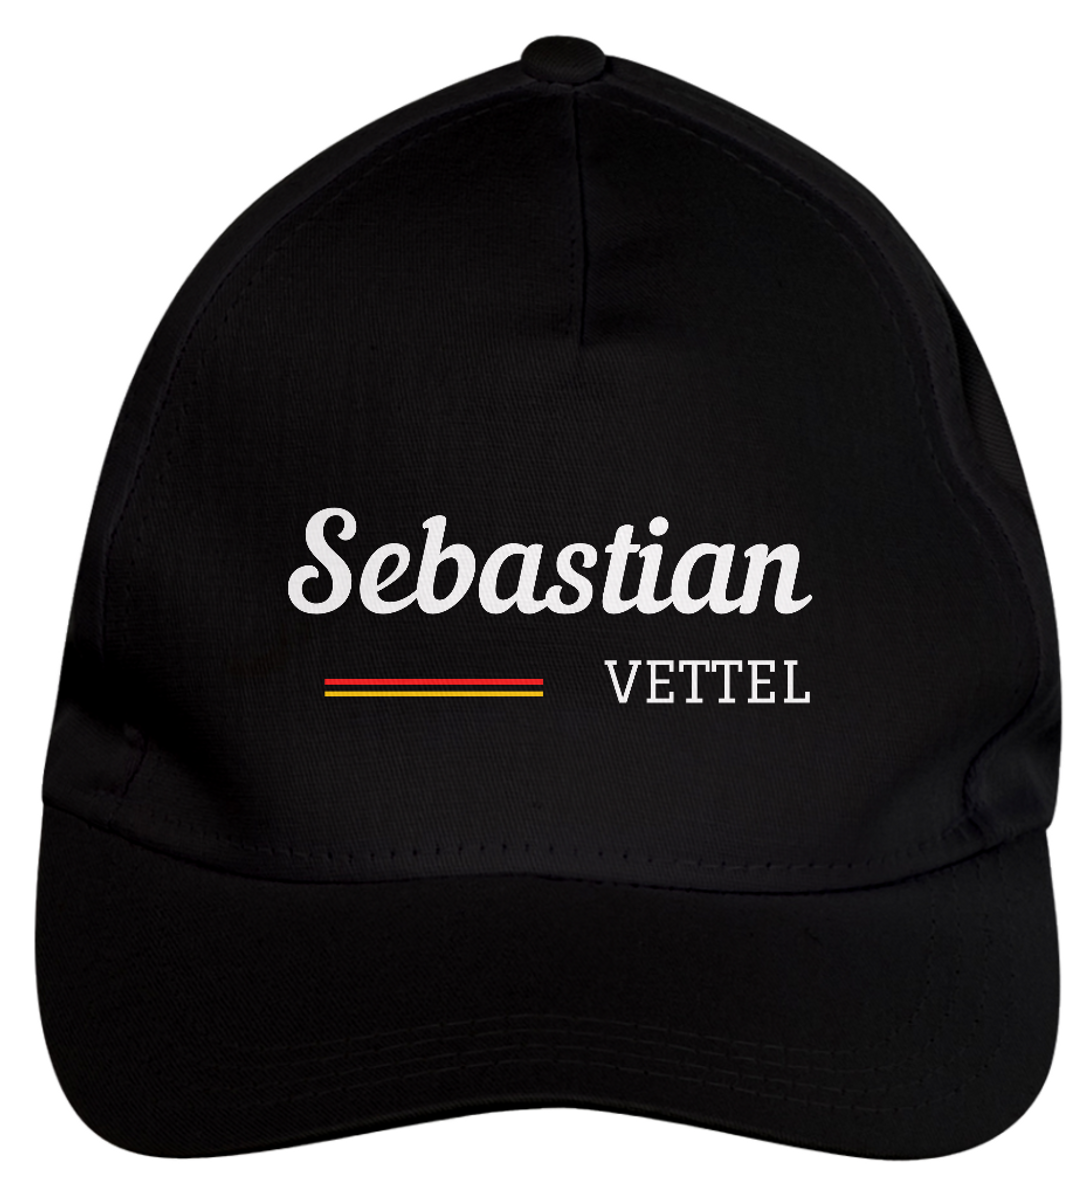 Nome do produto: Sebastian Vettel